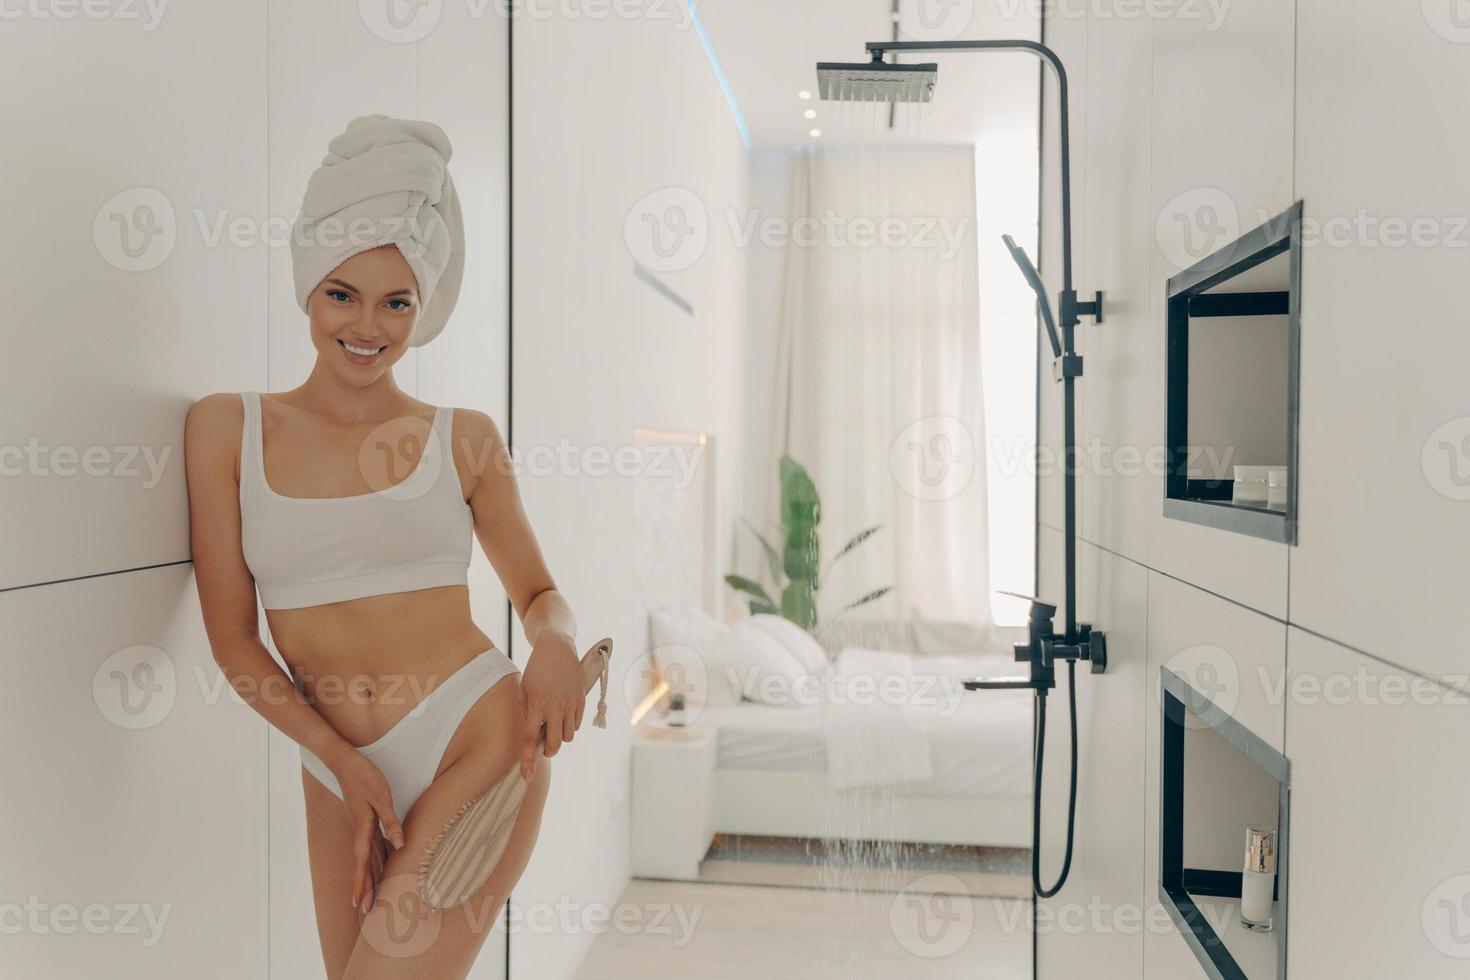 jolie jeune femme faisant un massage des jambes sèches avec une brosse organique en bois photo